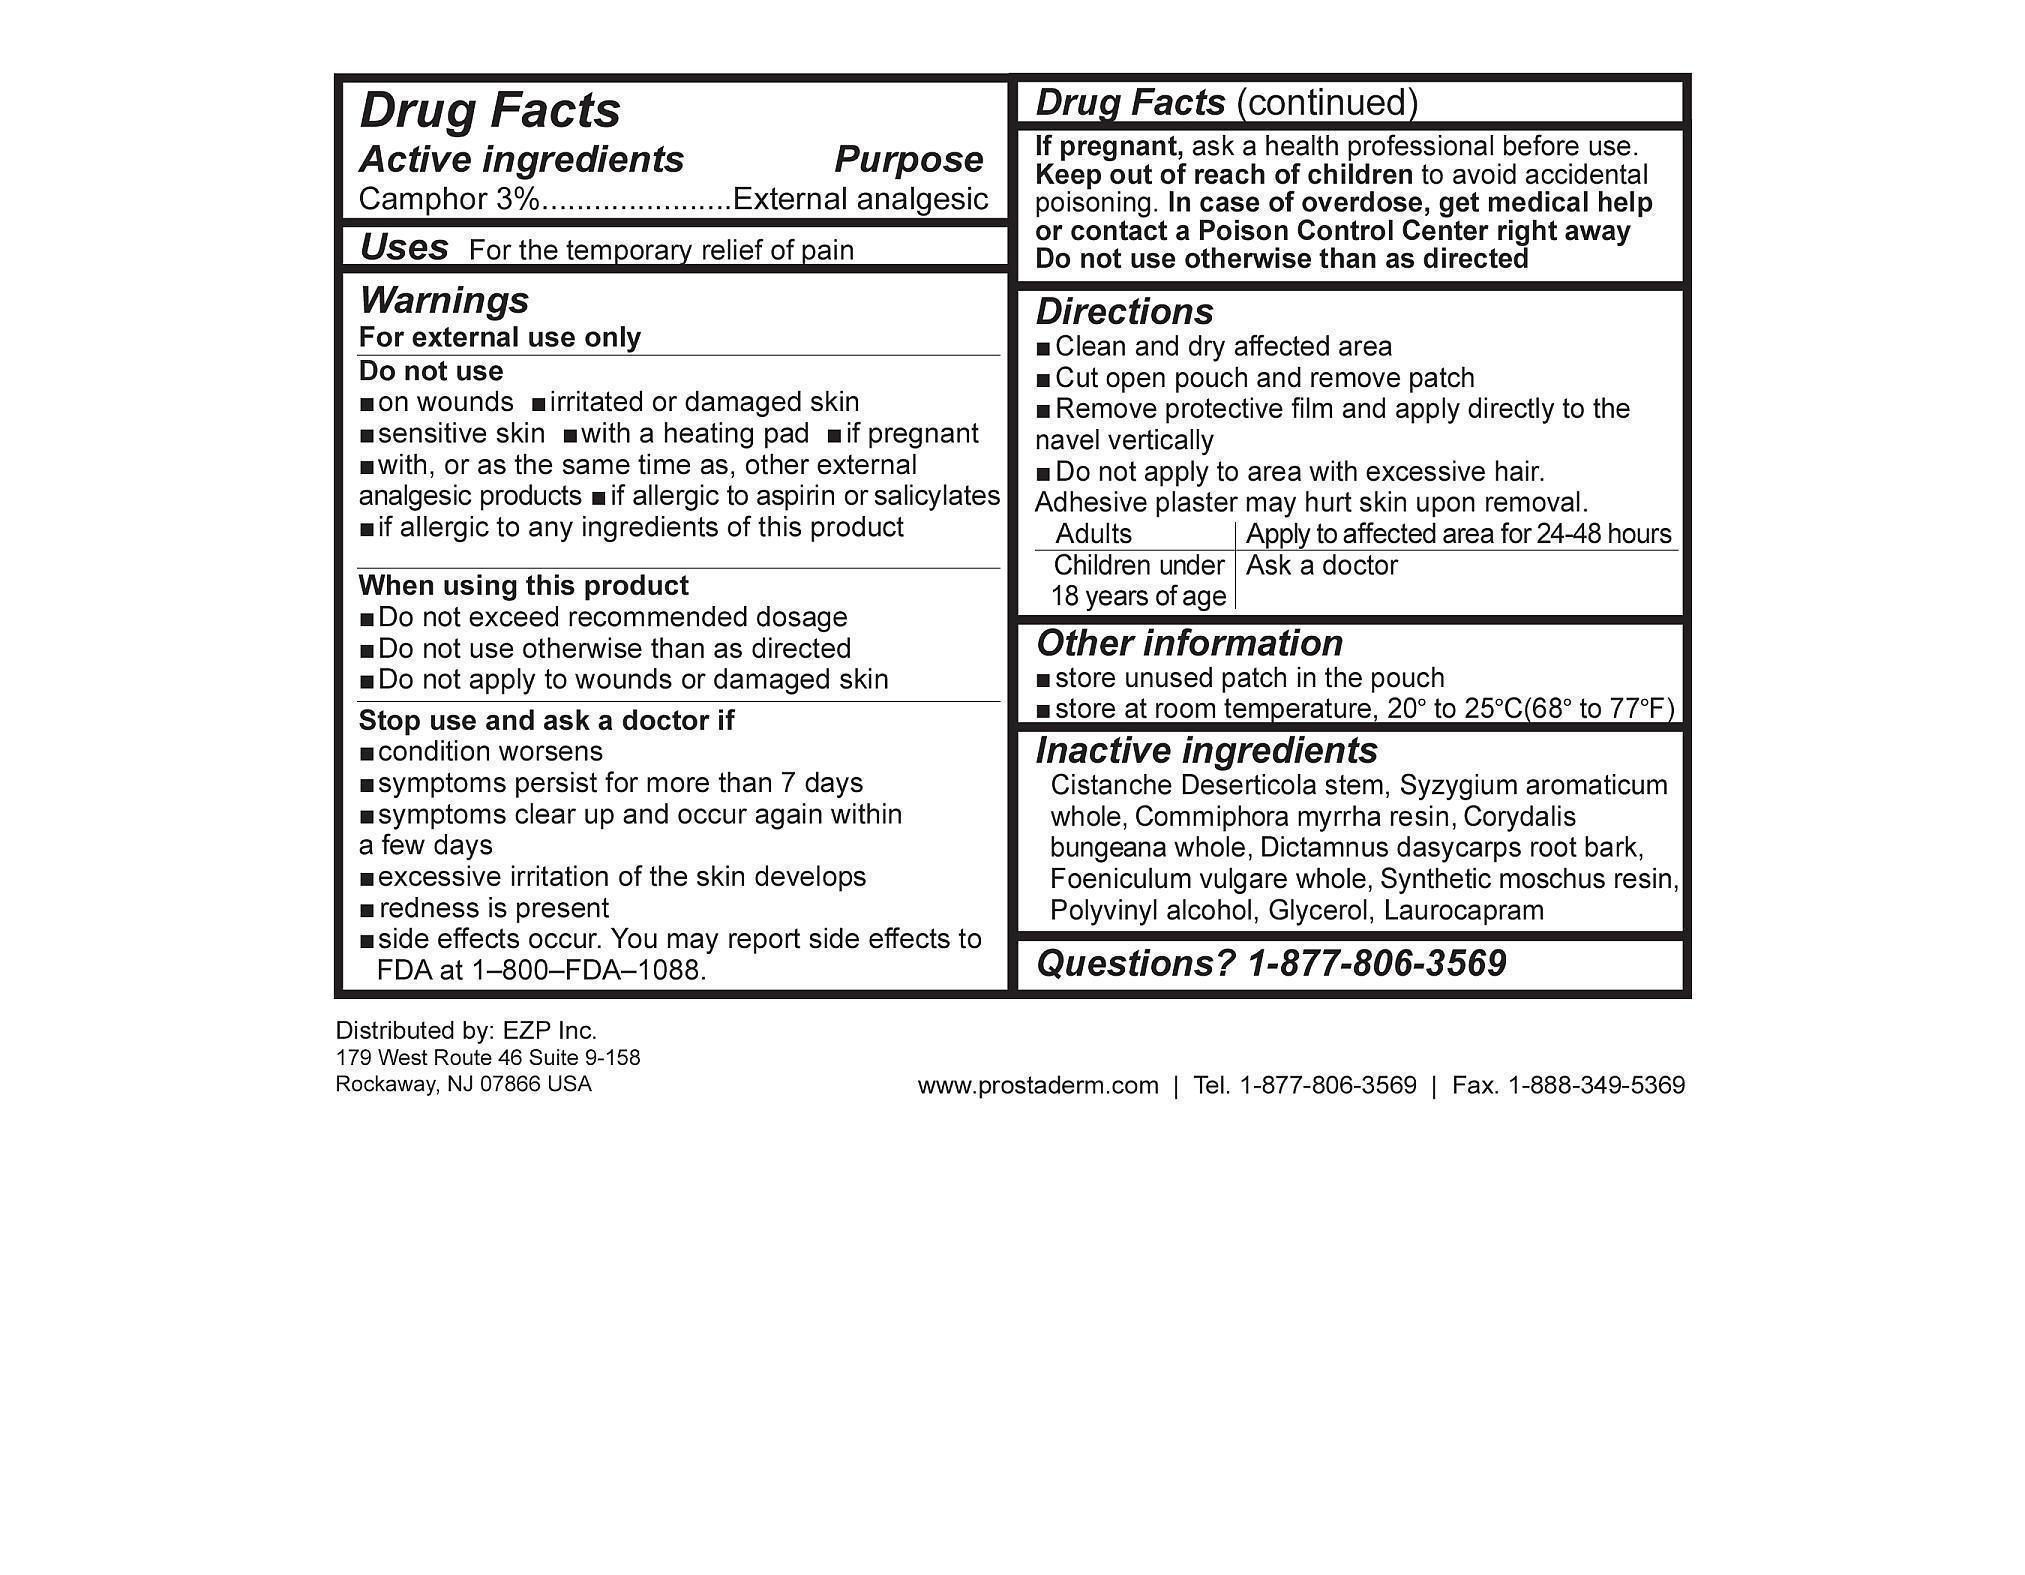 Prostaderm Drug Facts